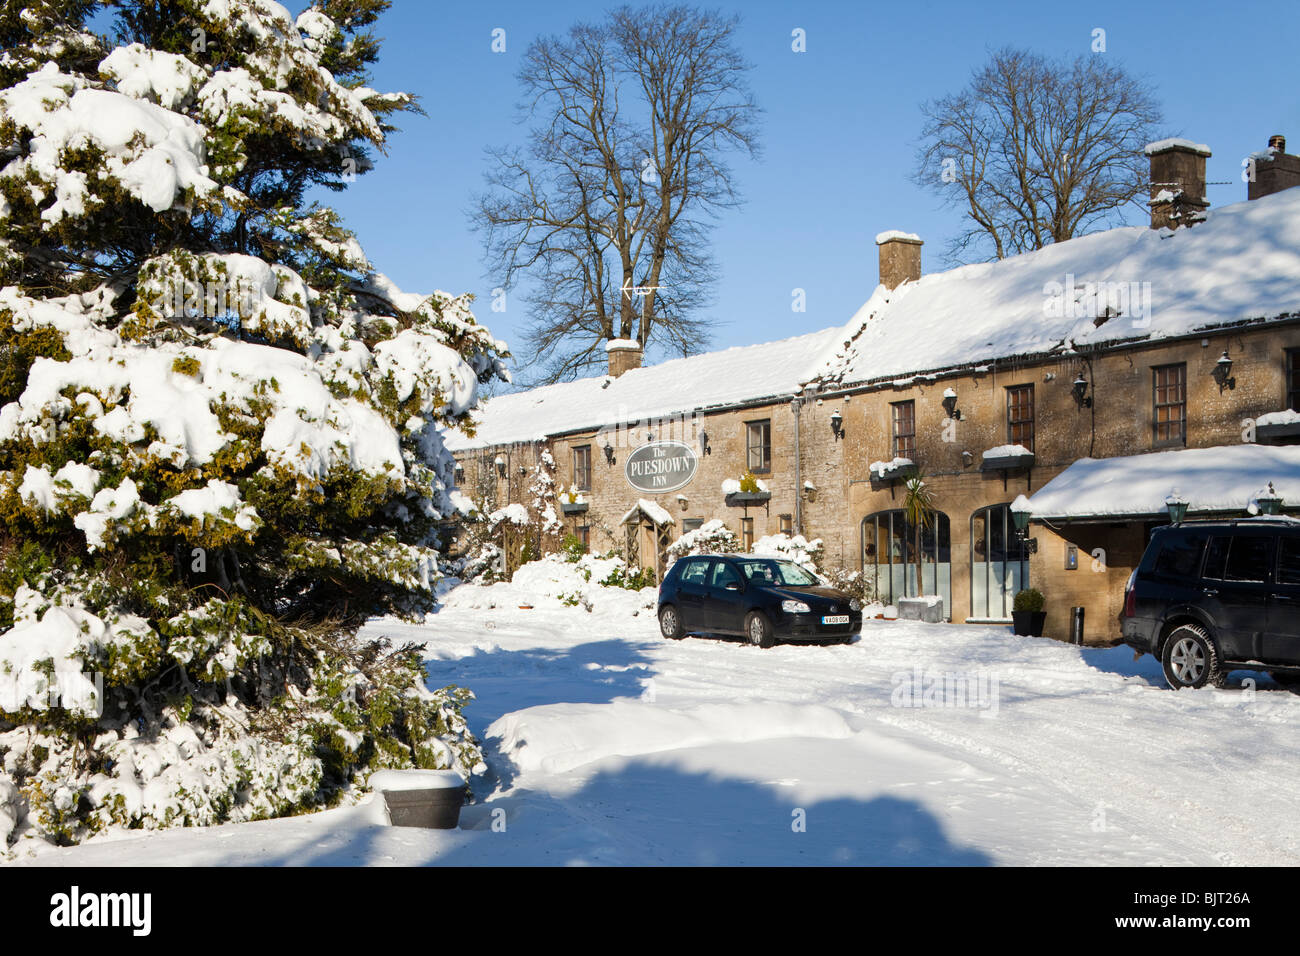 Neige de l'hiver sur les Cotswolds au Puesdown Inn, près de Hazleton, Gloucestershire Banque D'Images